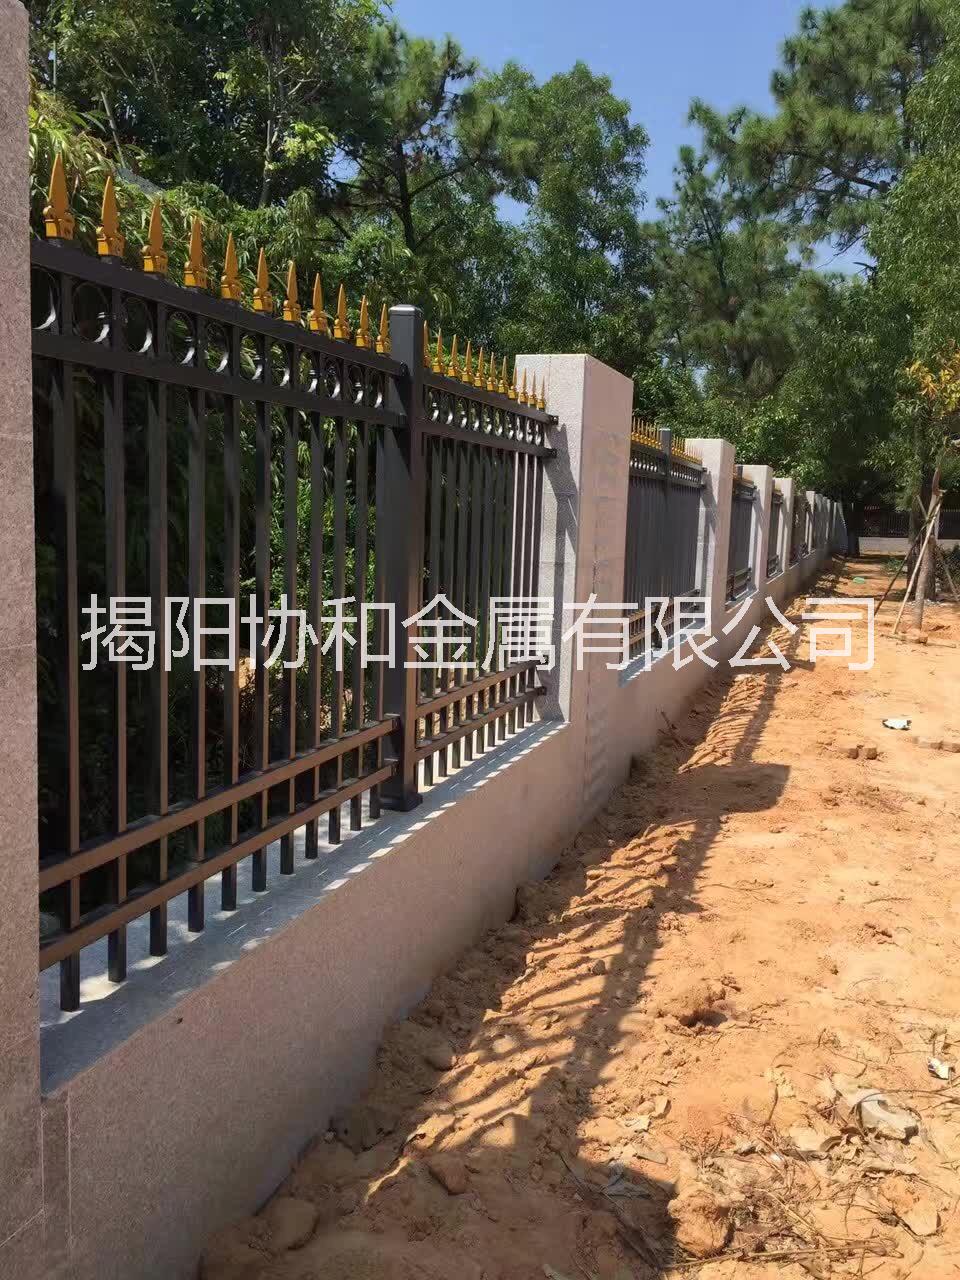 锌钢围栏 新型组装锌钢围栏